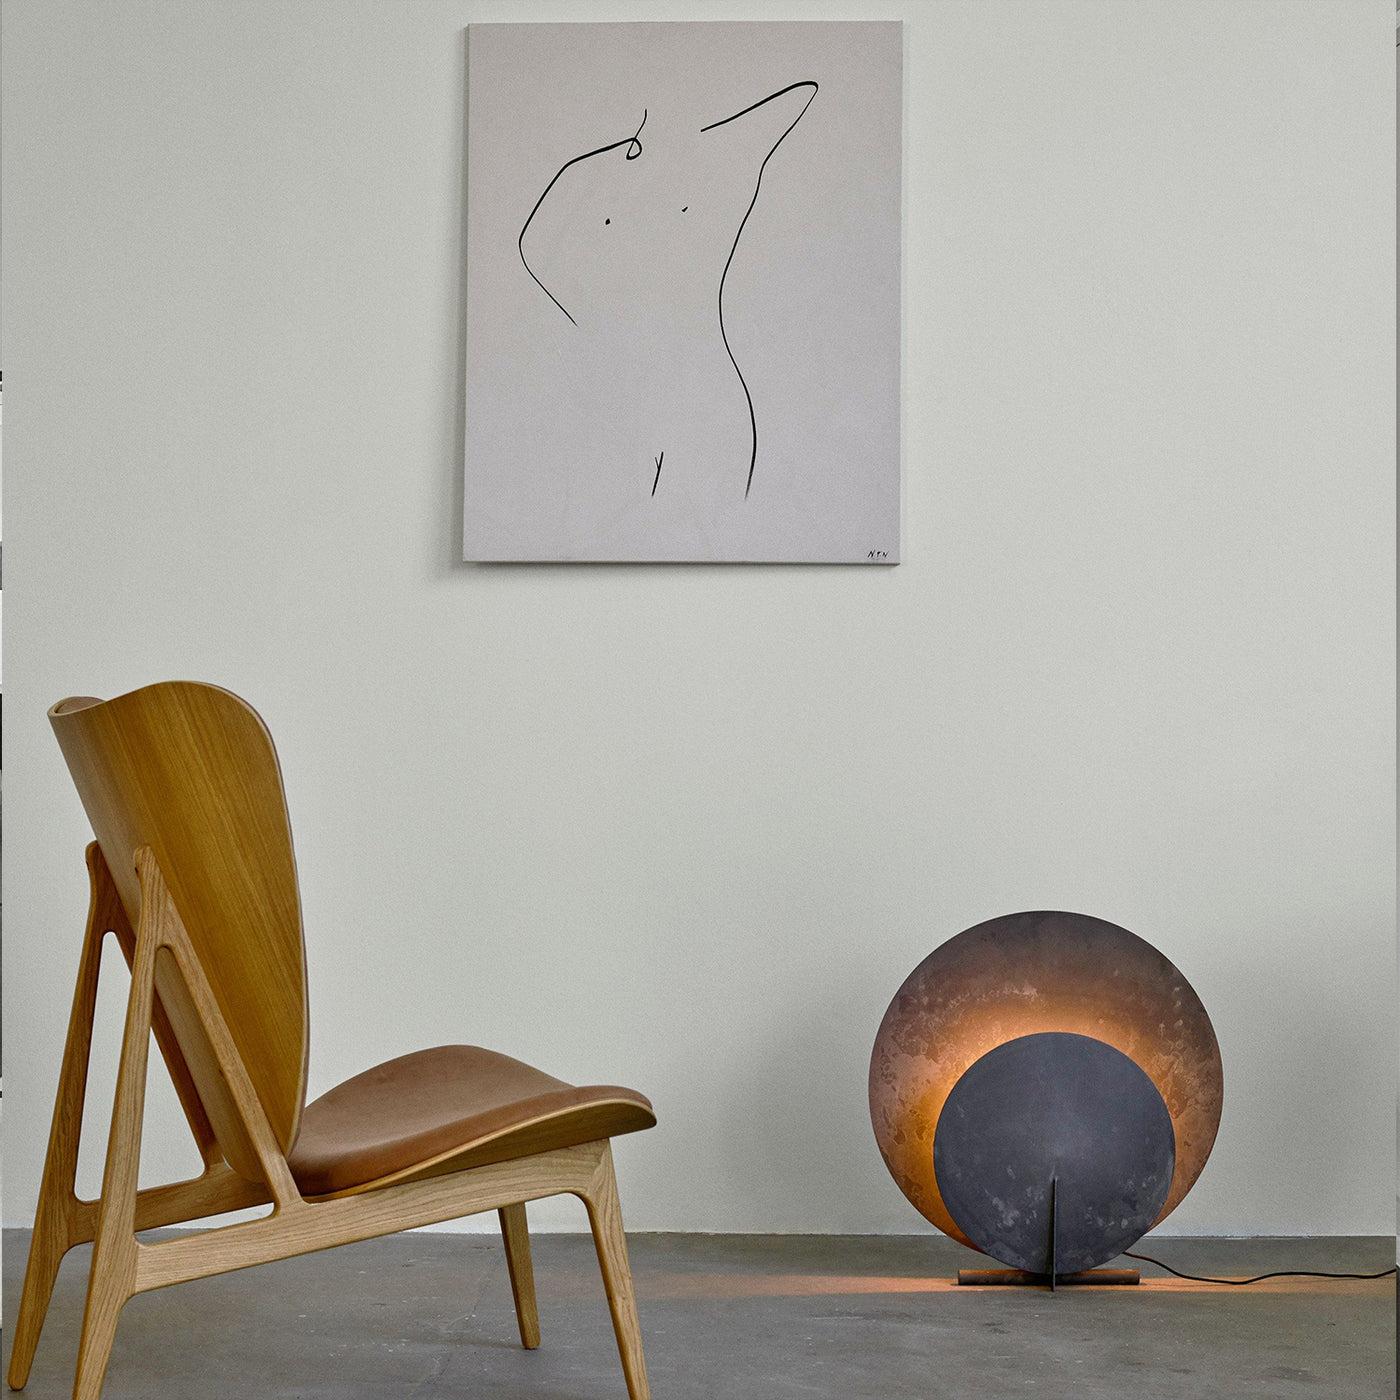 Orientální stolní lampa, 101 Copenhagen, minimalistické osvětlení, Romein, AD.N2 lampa, skandinávské doplňky do domu, luxusní osvětlení, luxusní stolní lampa